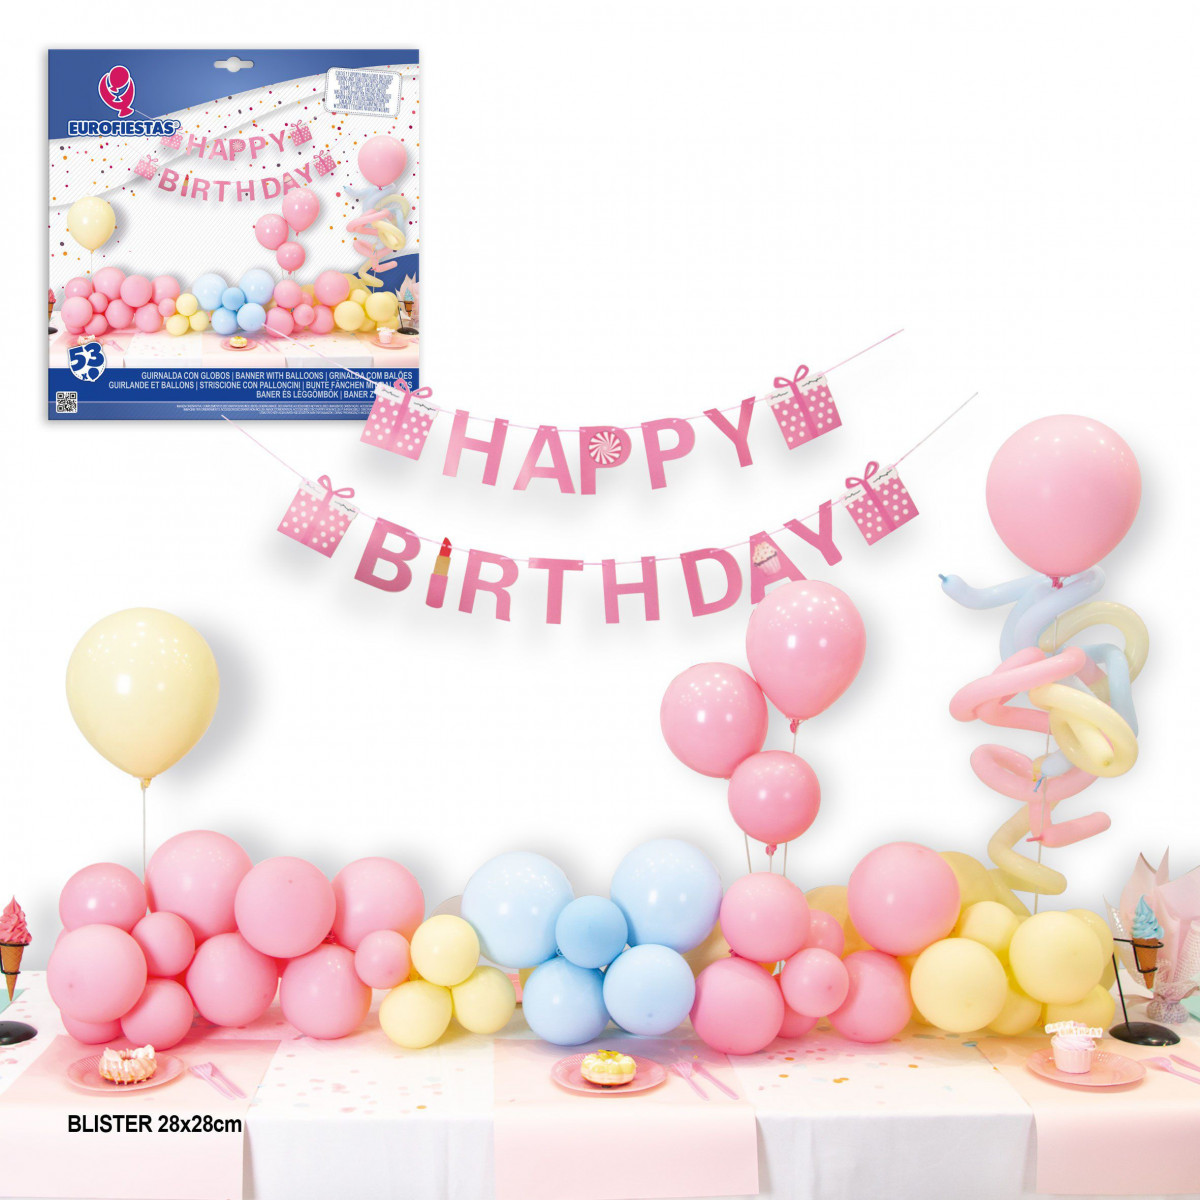 Set nube de 53 globos colores pastel guirnalda happy birthday y 2 arboles